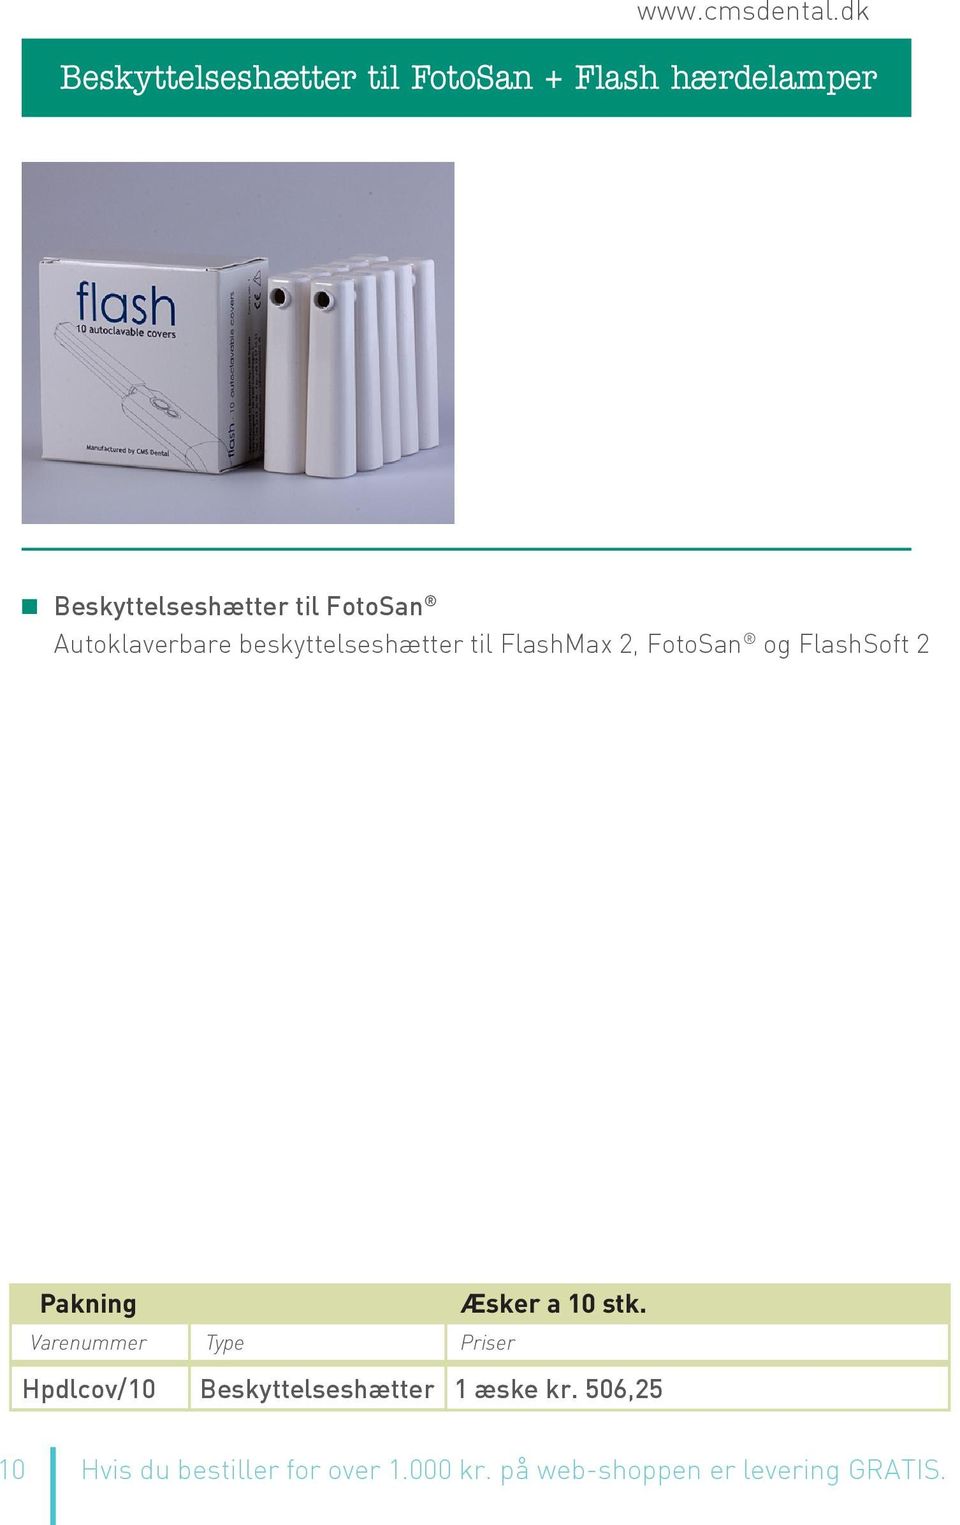 FlashSoft 2 Æsker a 10 stk. Hpdlcov/10 Beskyttelseshætter 1 æske kr.